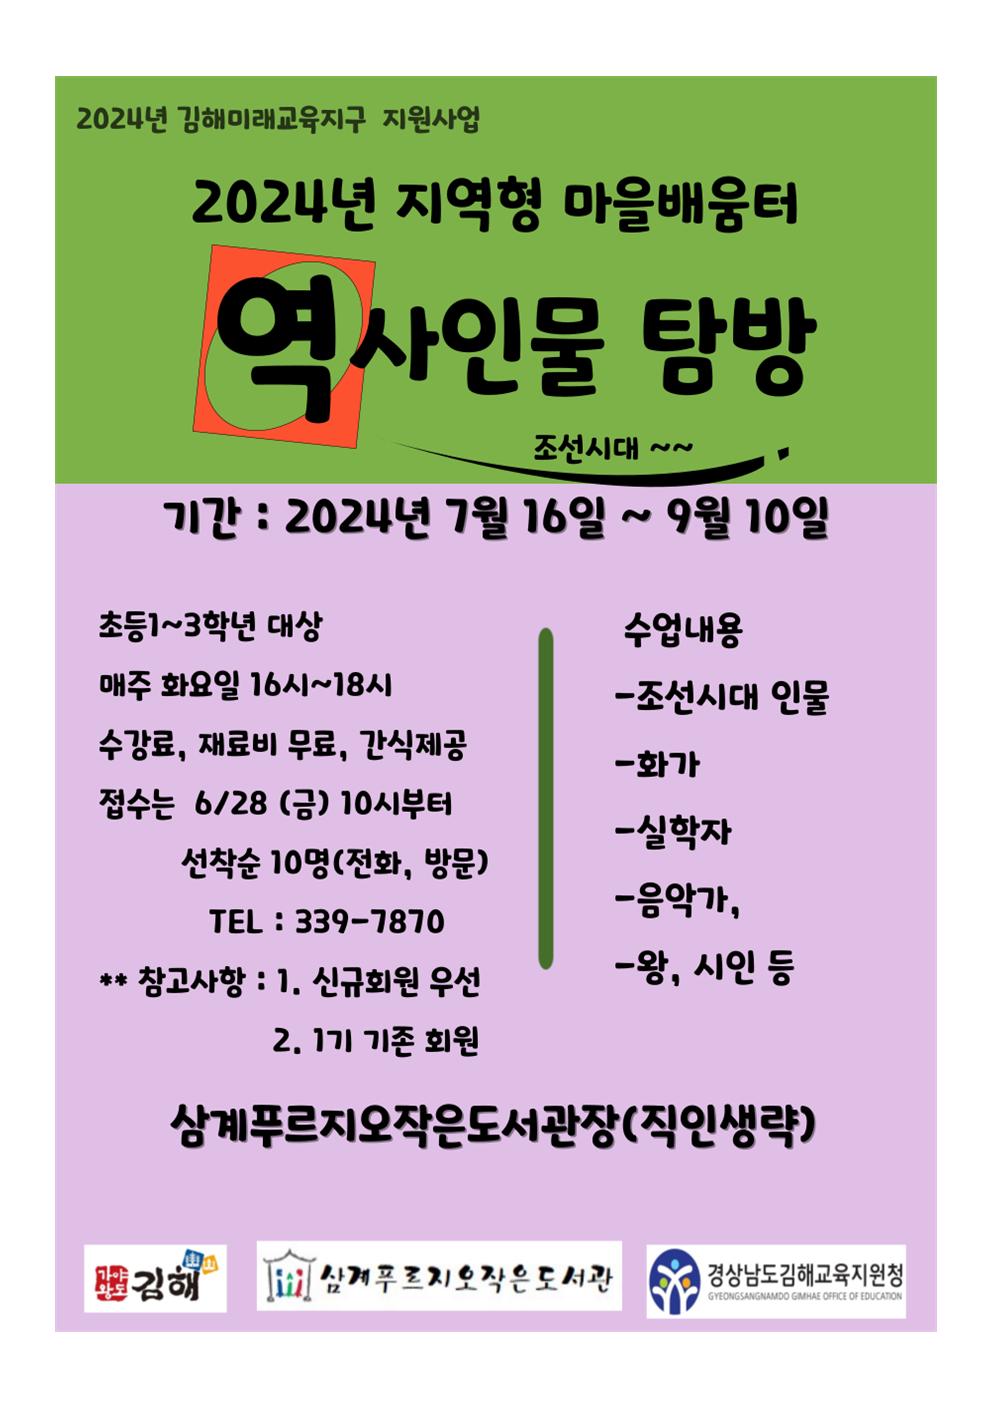 24 역사인물탐방 2기 모집 홍보문